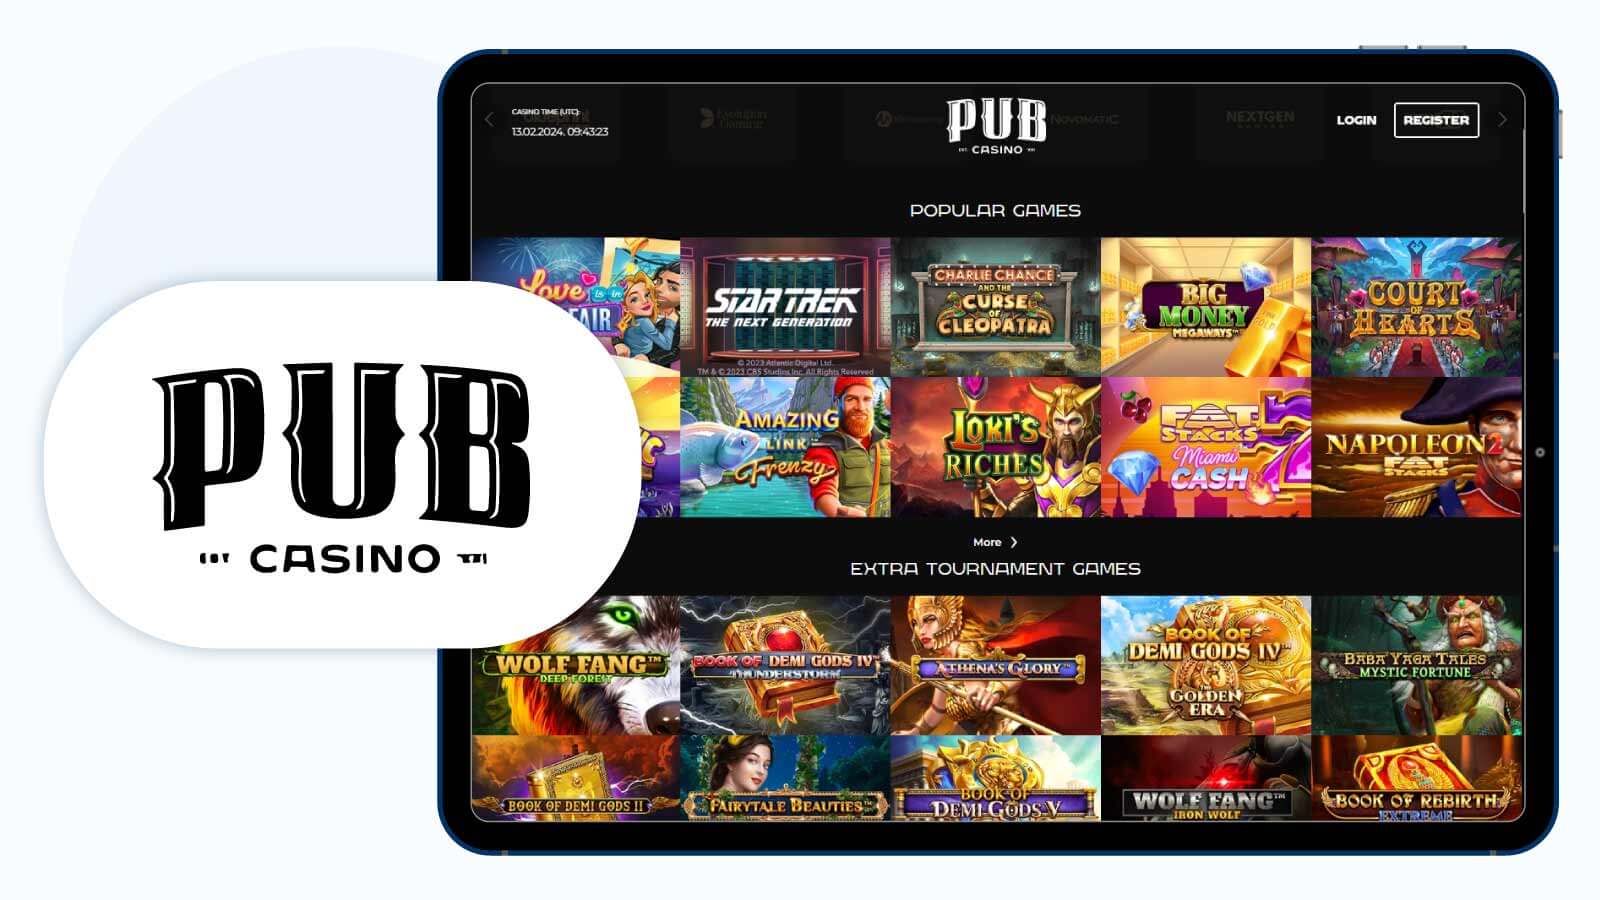 Pub Casino – newest L&L Europe casino in the UK